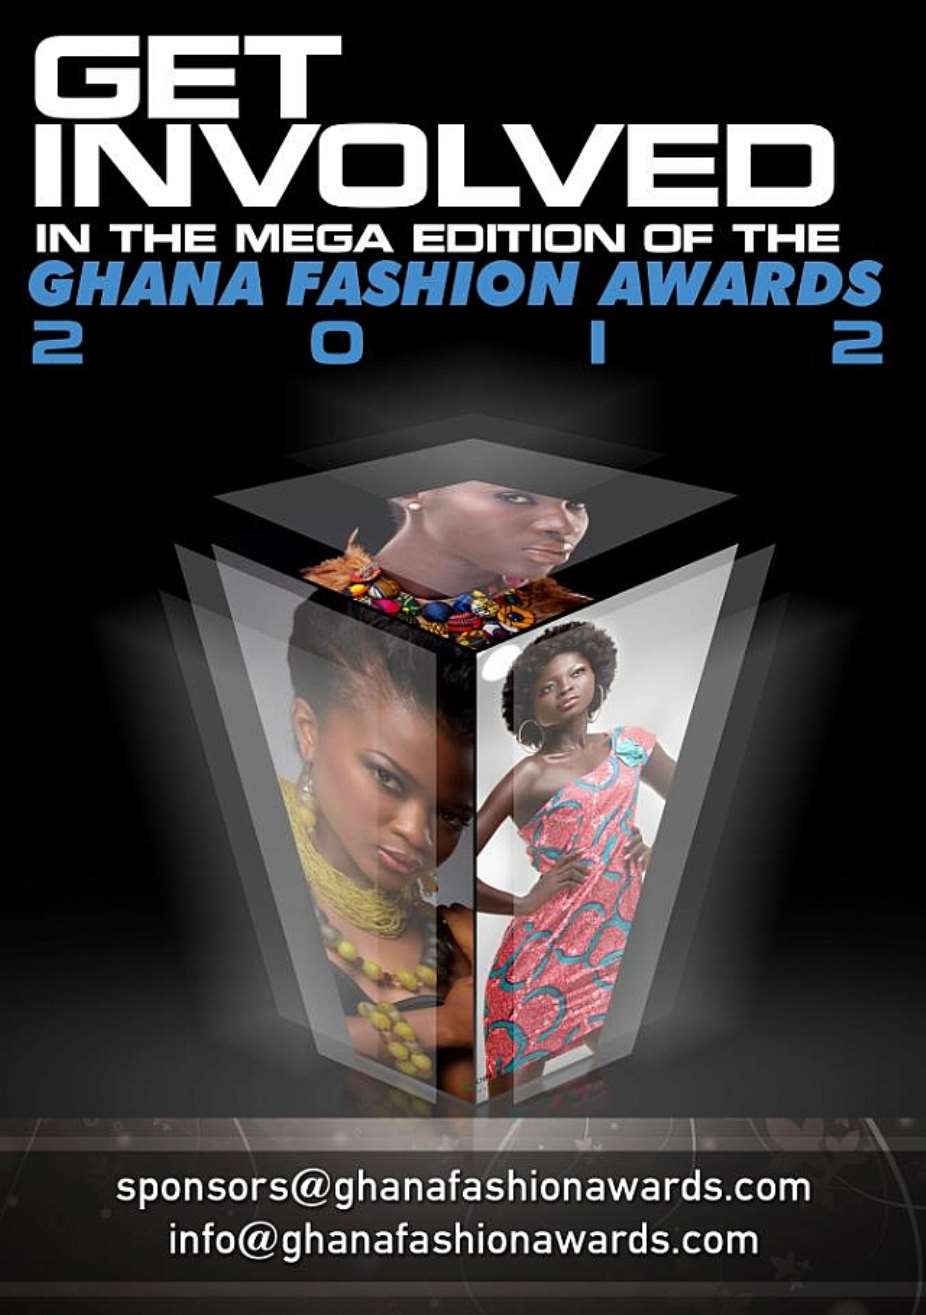 Ghana Fashion Awards 2012